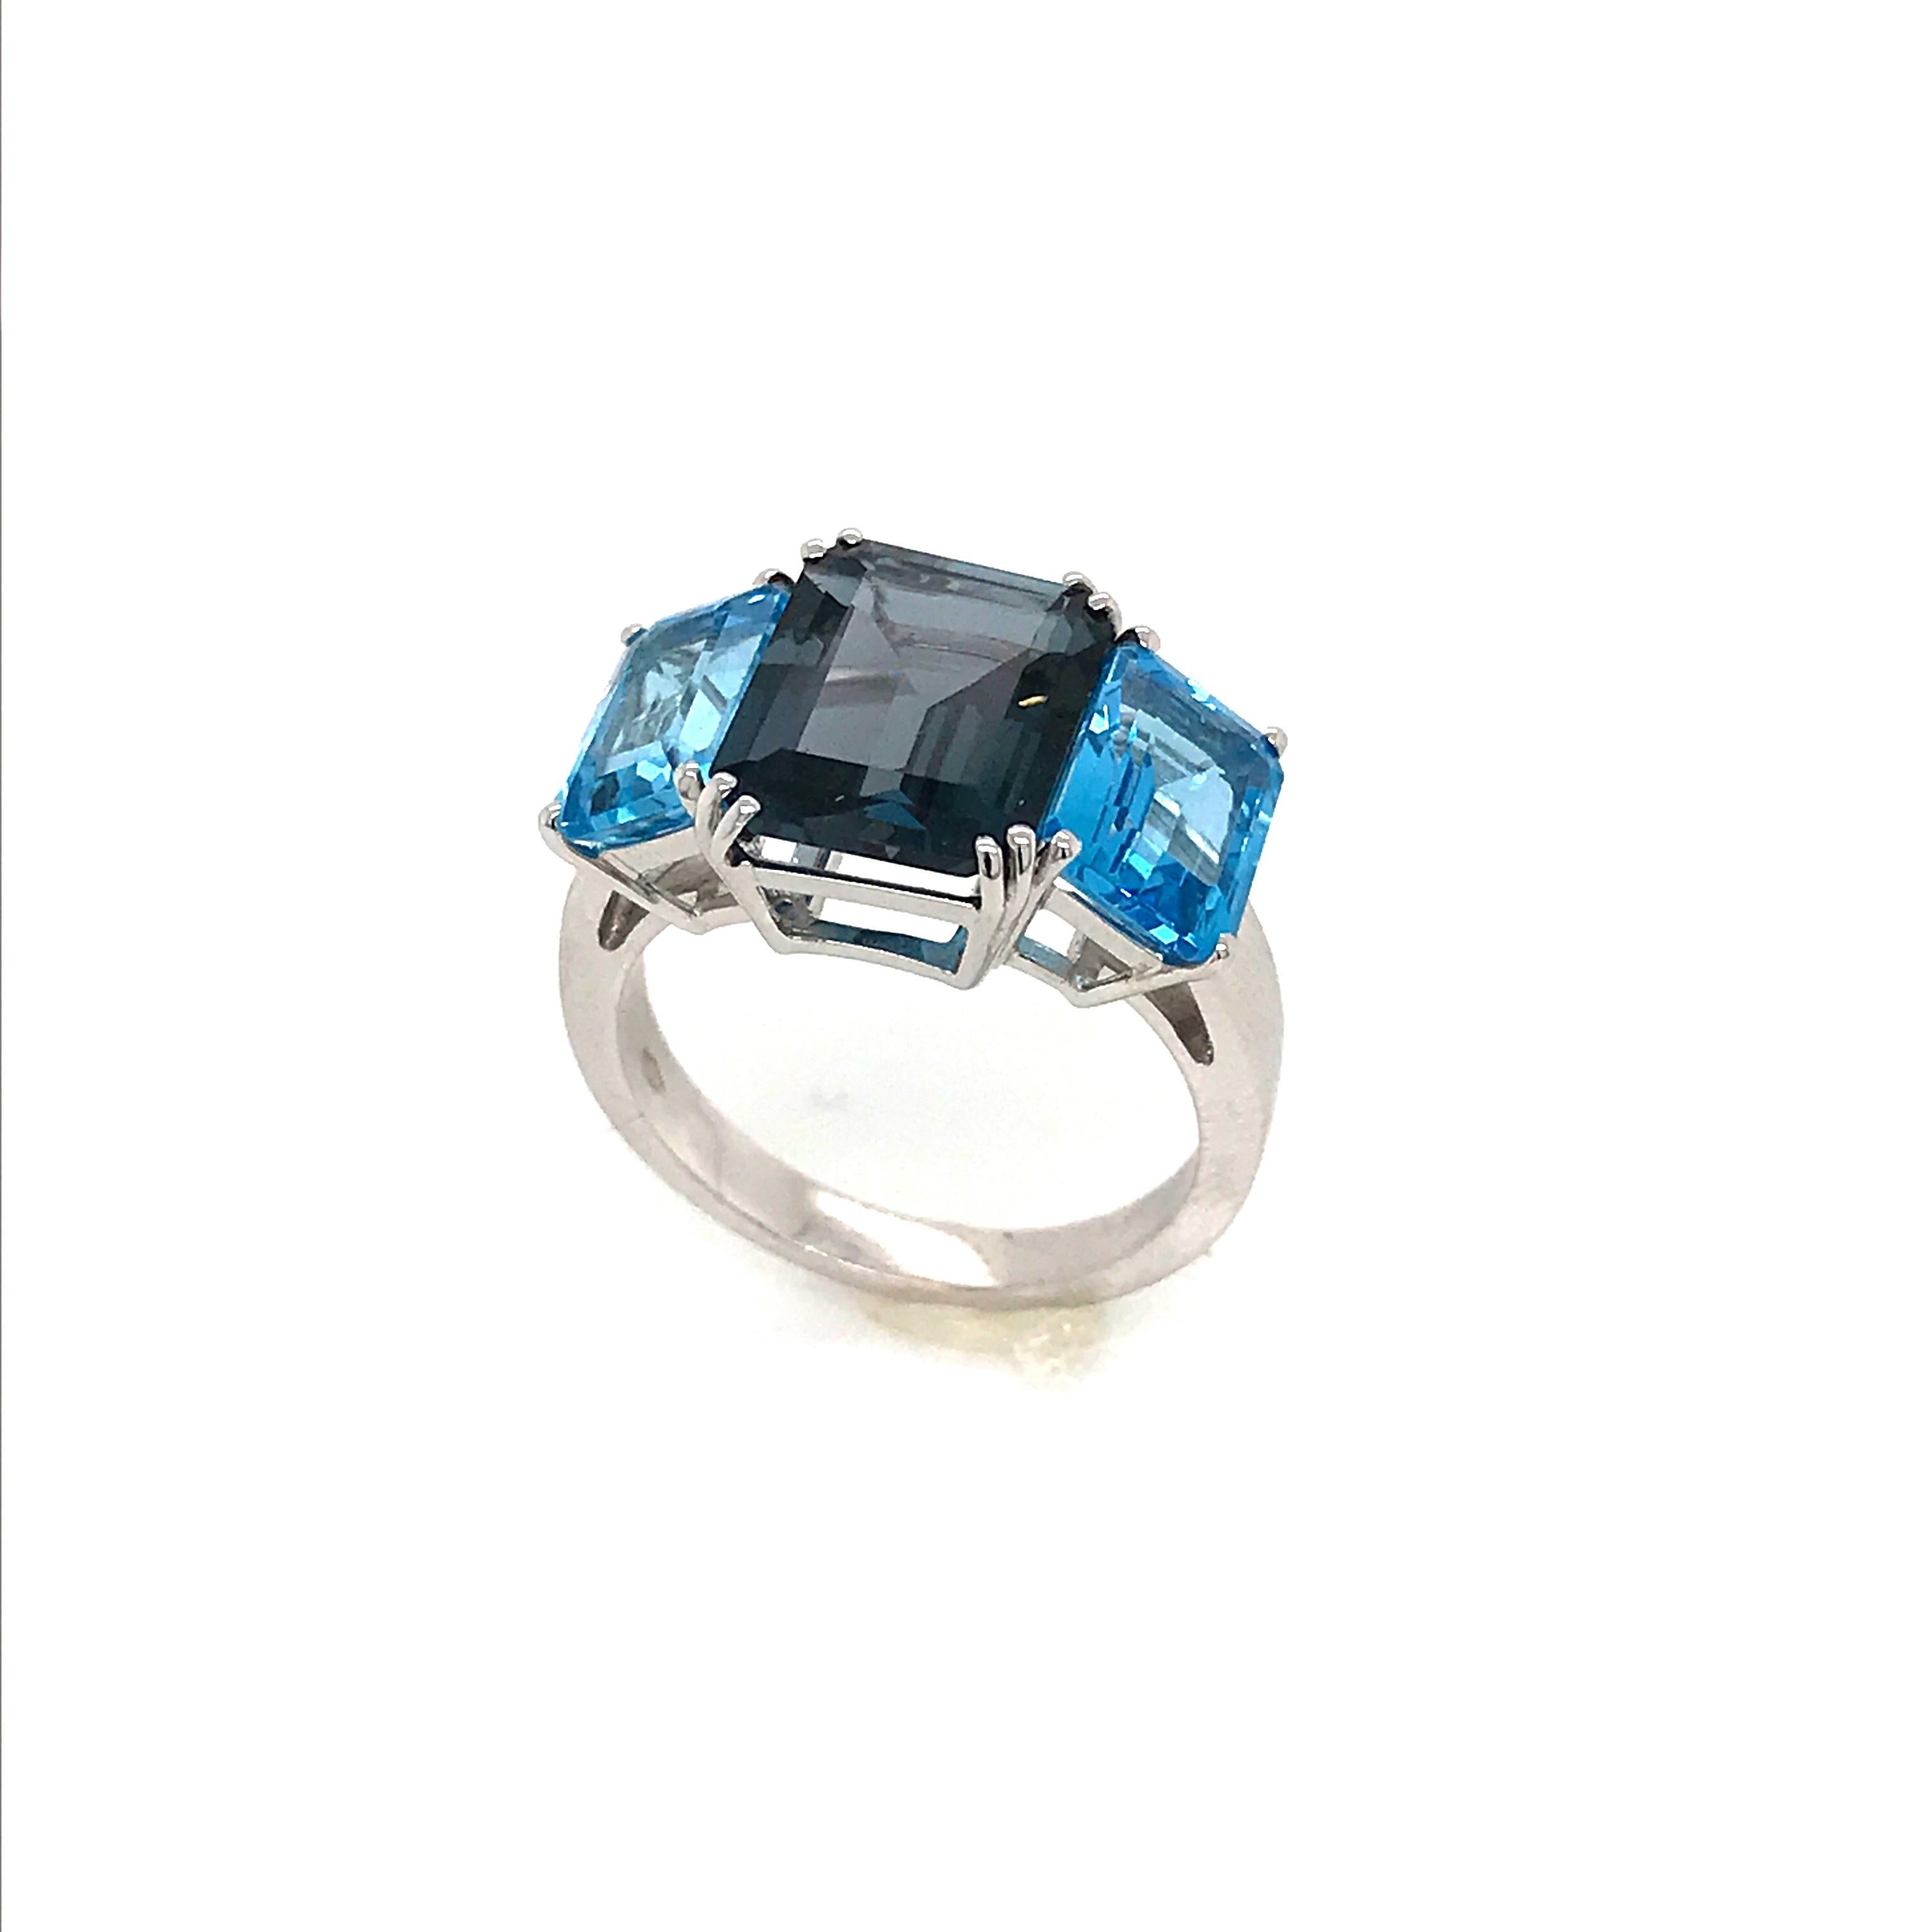 Blue Topaz and London Topaz on White Gold 18 Karat Fashion Ring (Smaragdschliff)